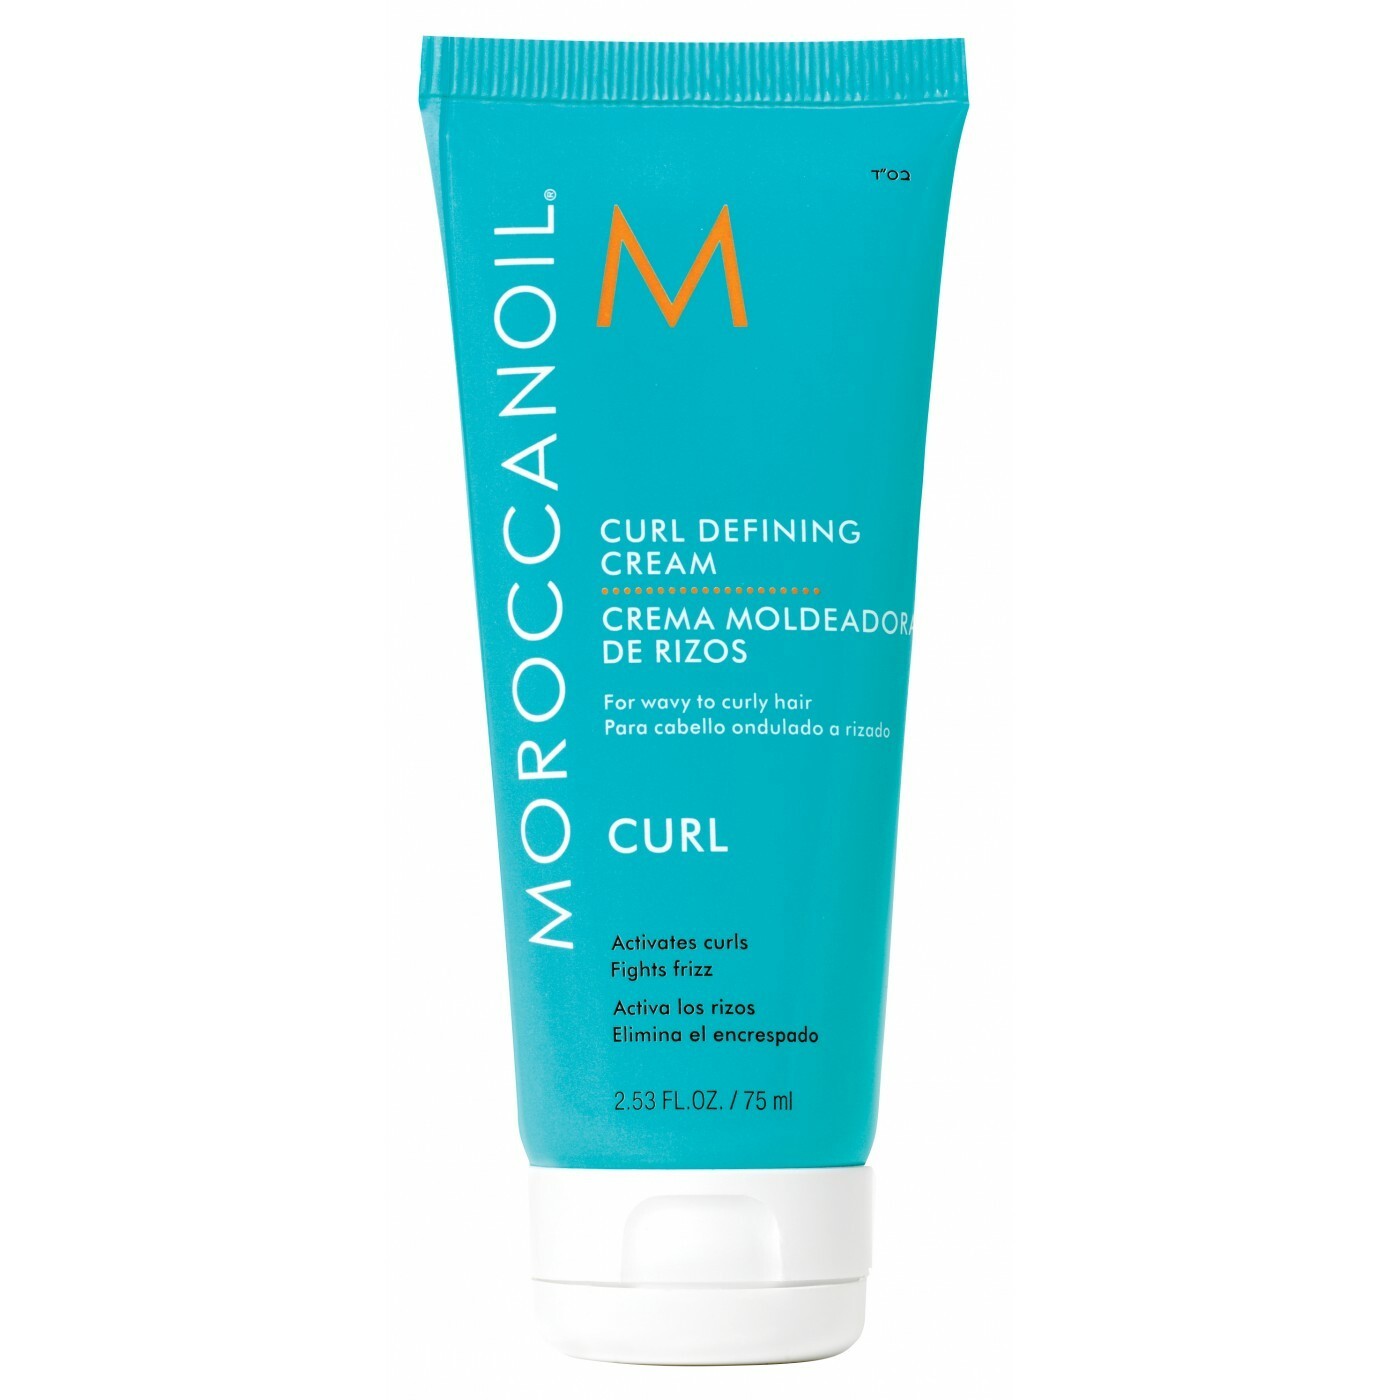 moroccanoil curl defining cream